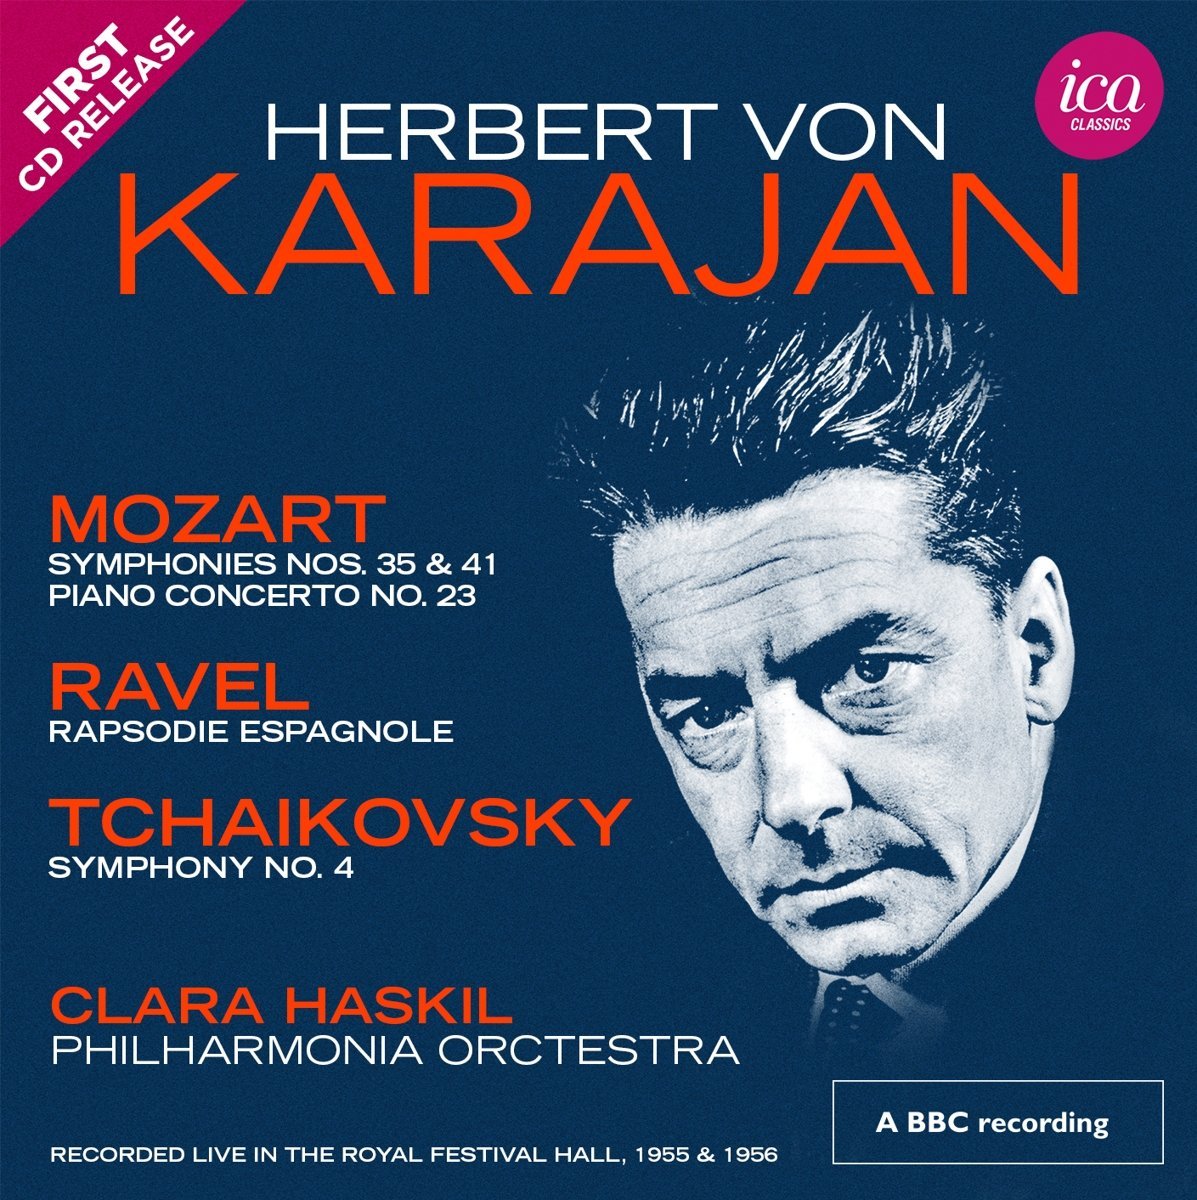 ICA Classics' Karajan